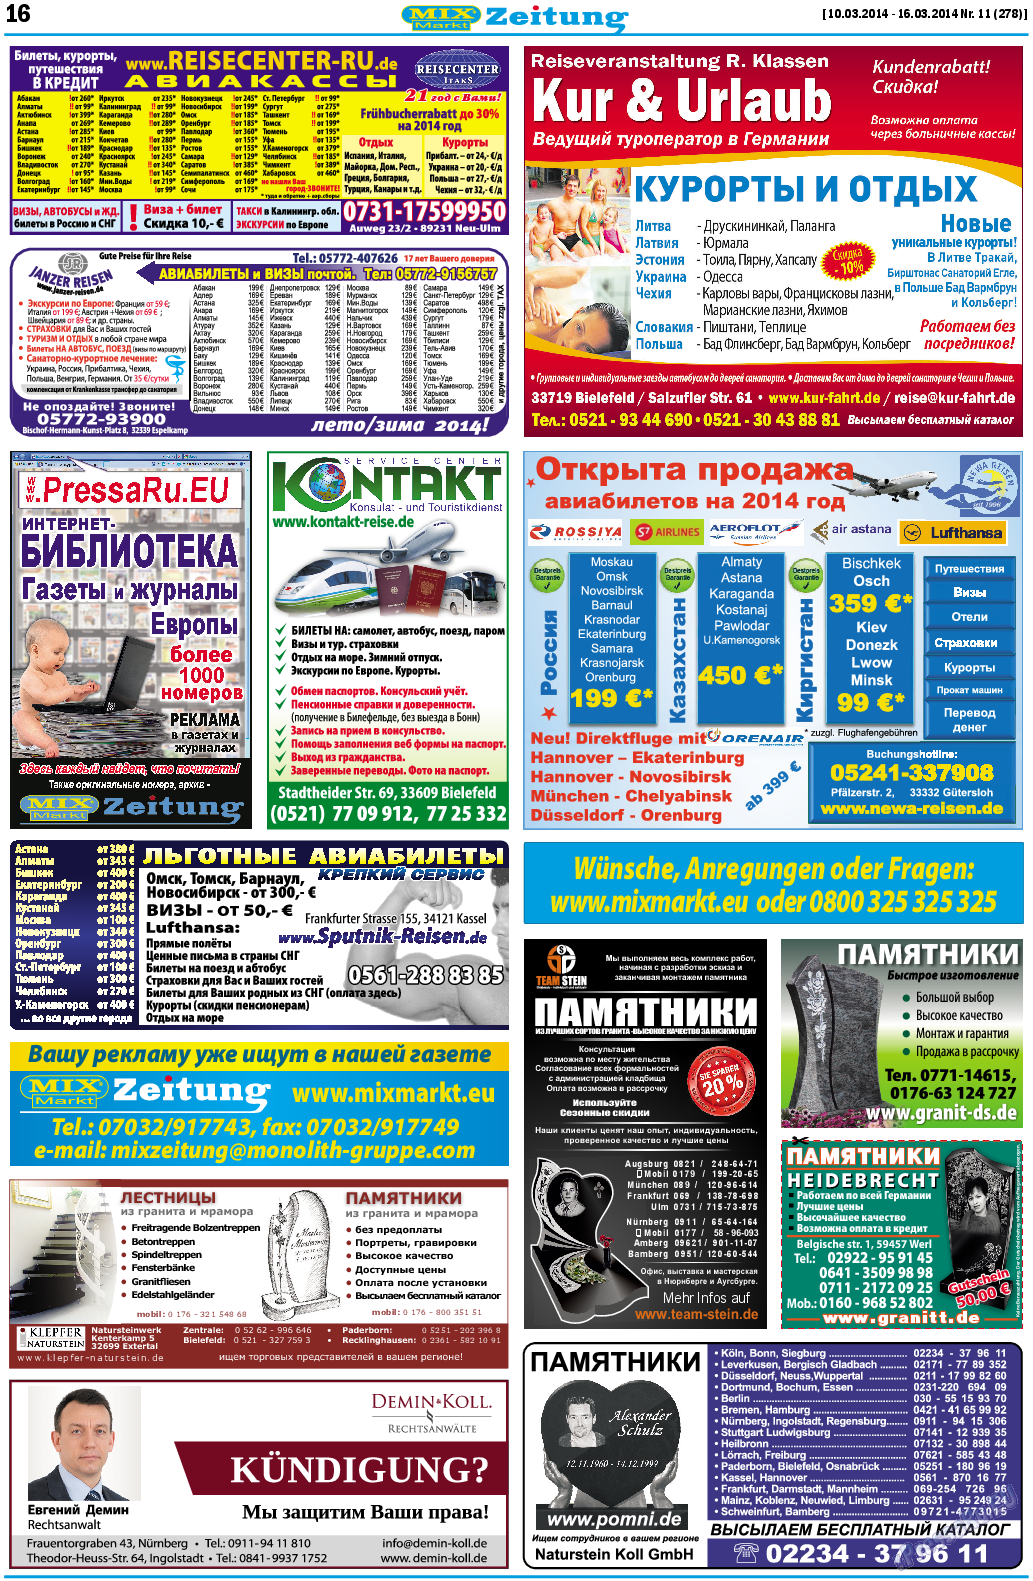 MIX-Markt Zeitung, газета. 2014 №11 стр.16